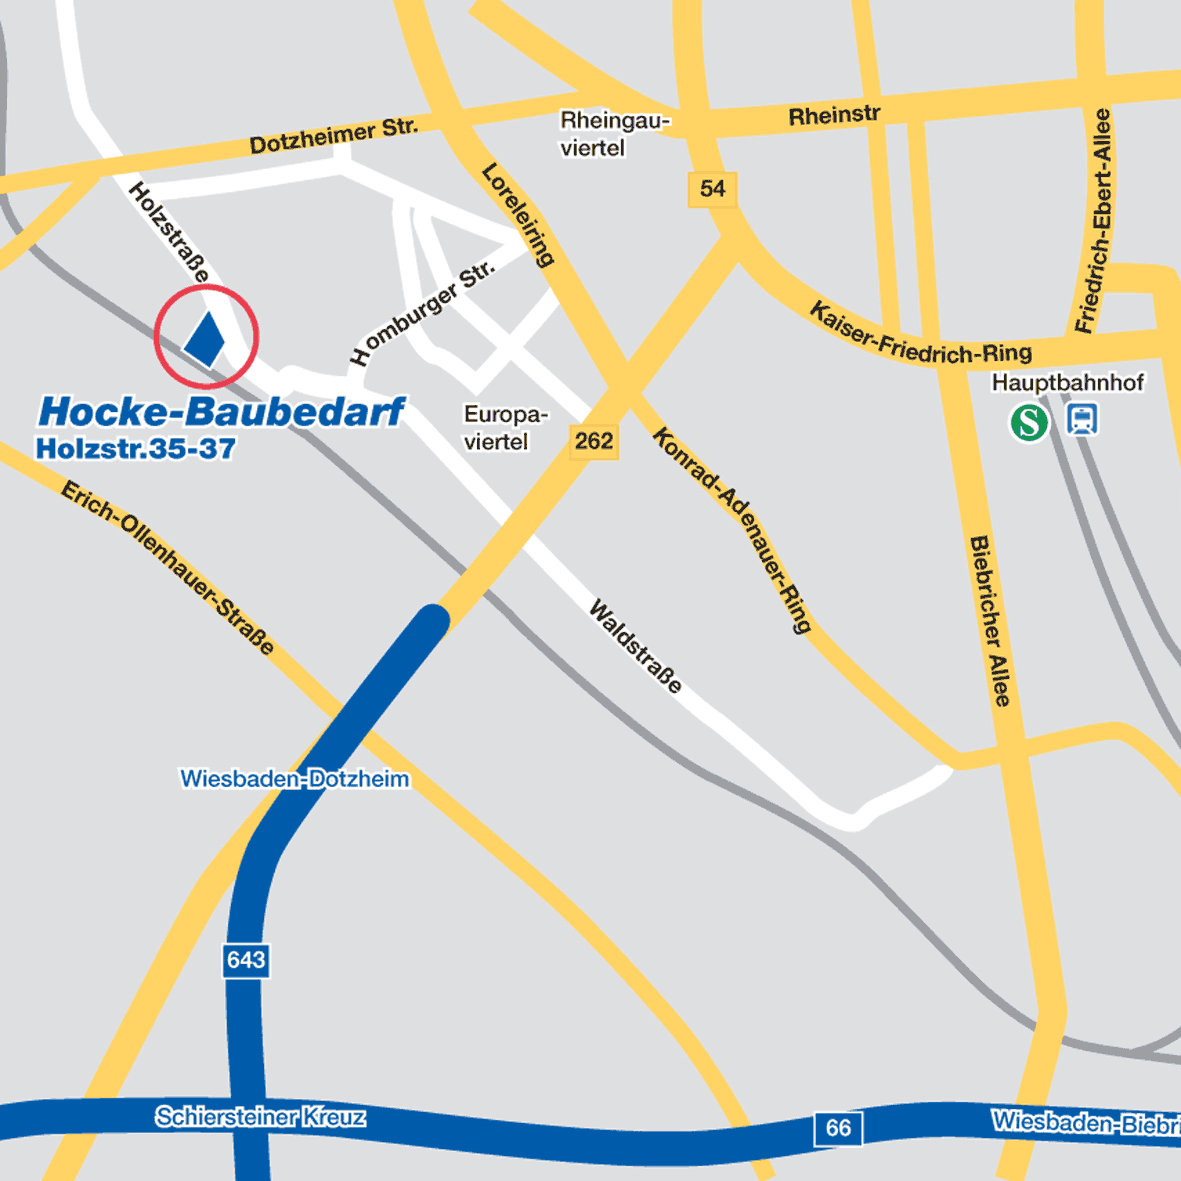 Lageplan Wiesbaden